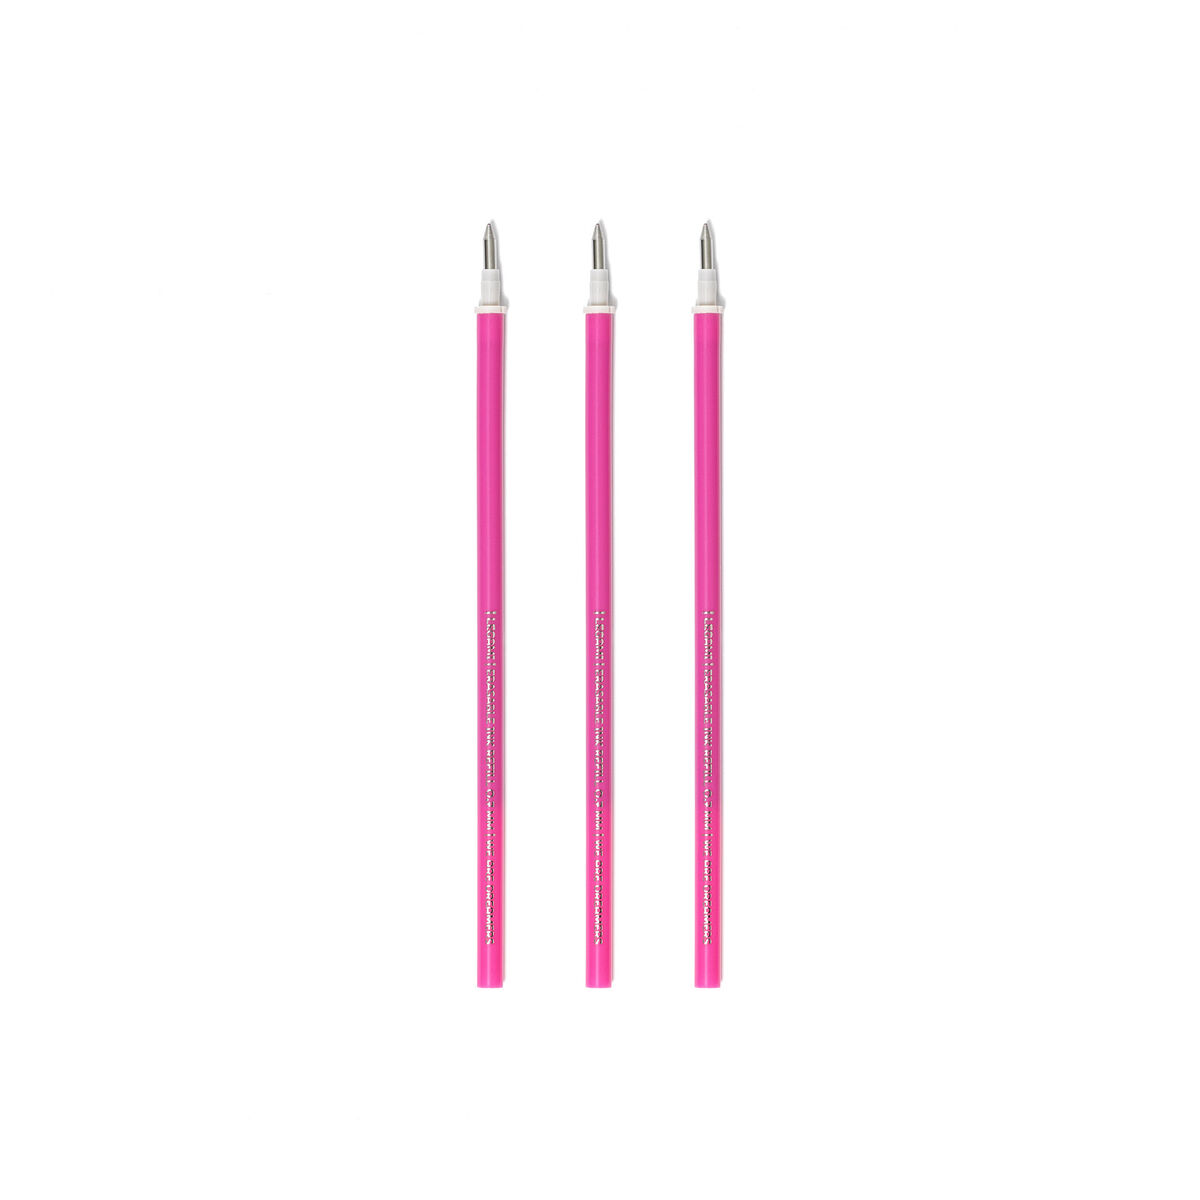 Refill per Penna Gel Cancellabile - Erasable Pen PINK